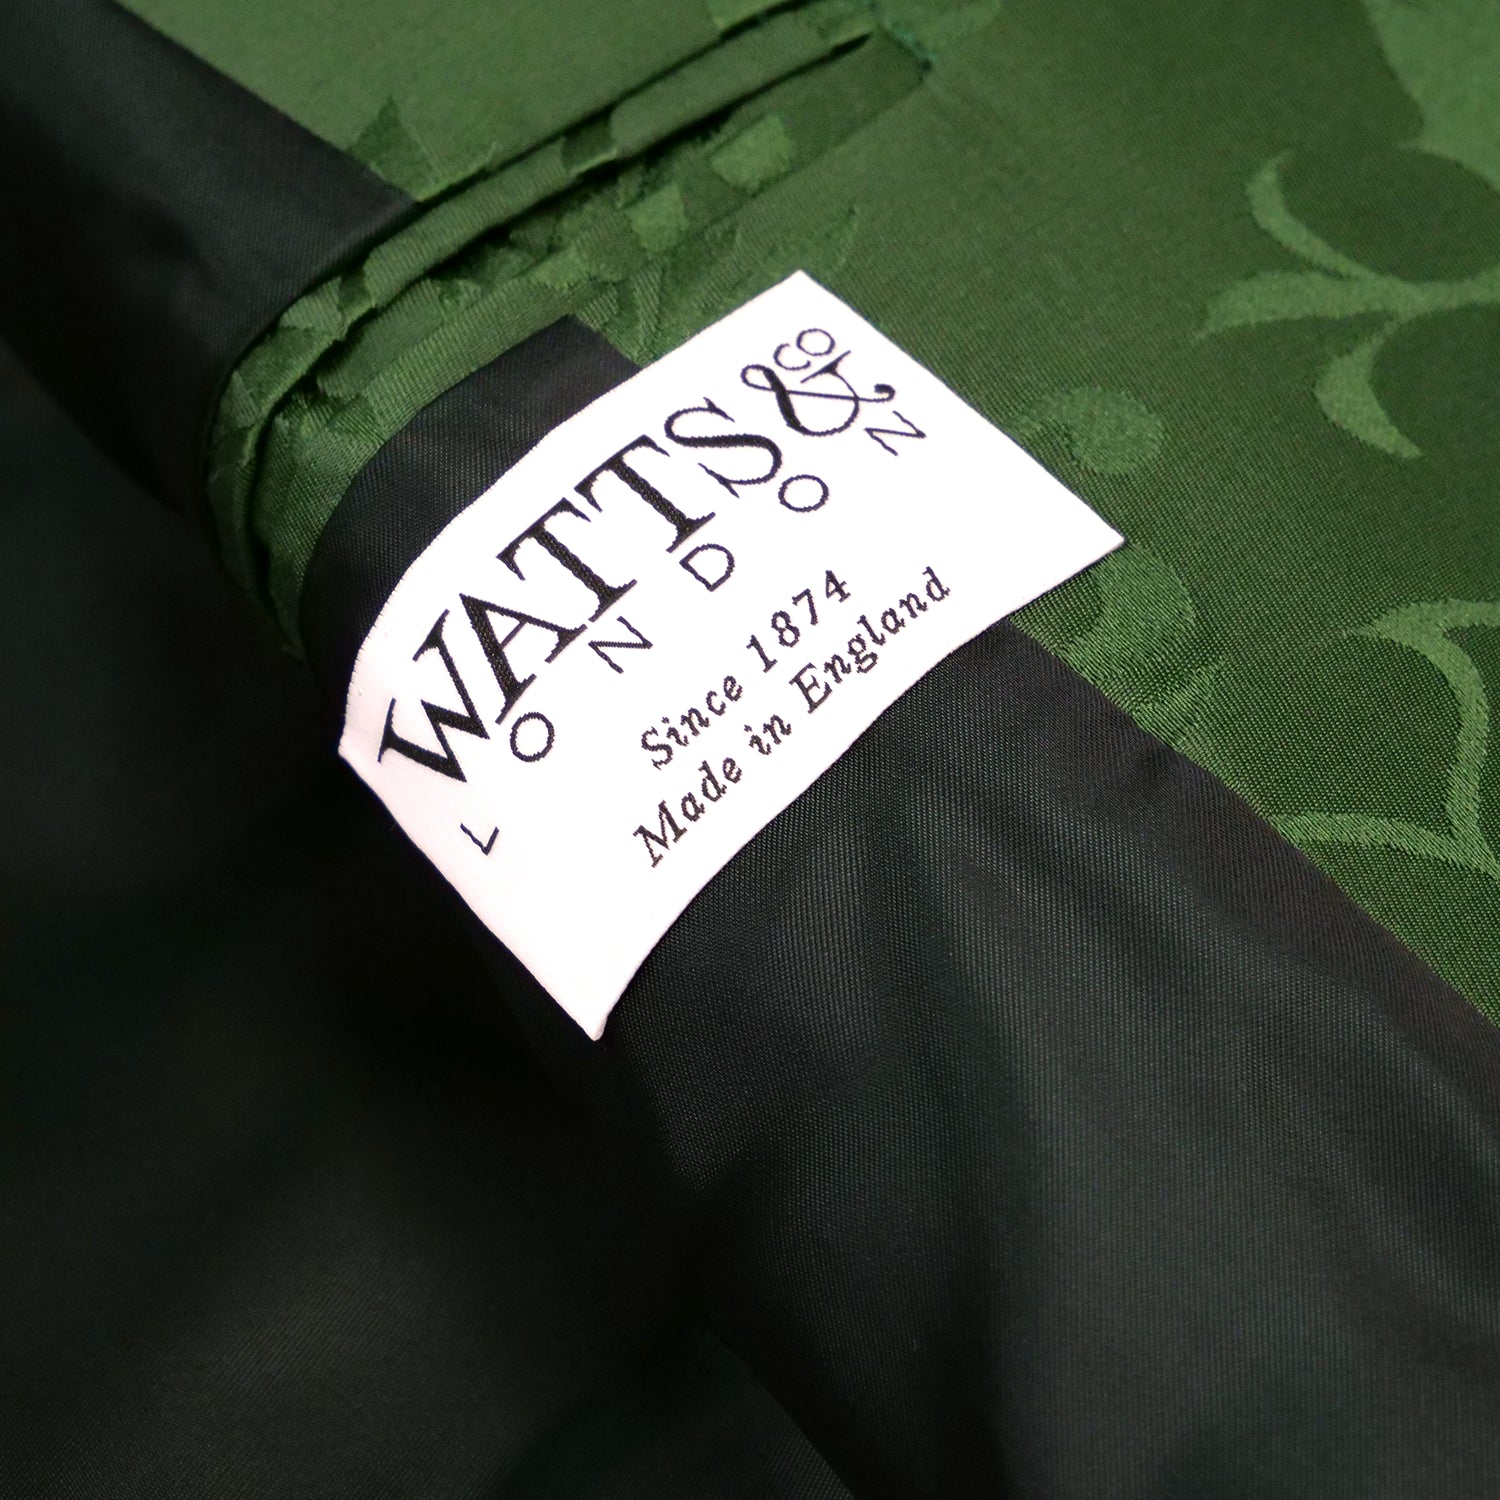 Women's Green 'Bellini' Silk Frock Coat Sample (size small)